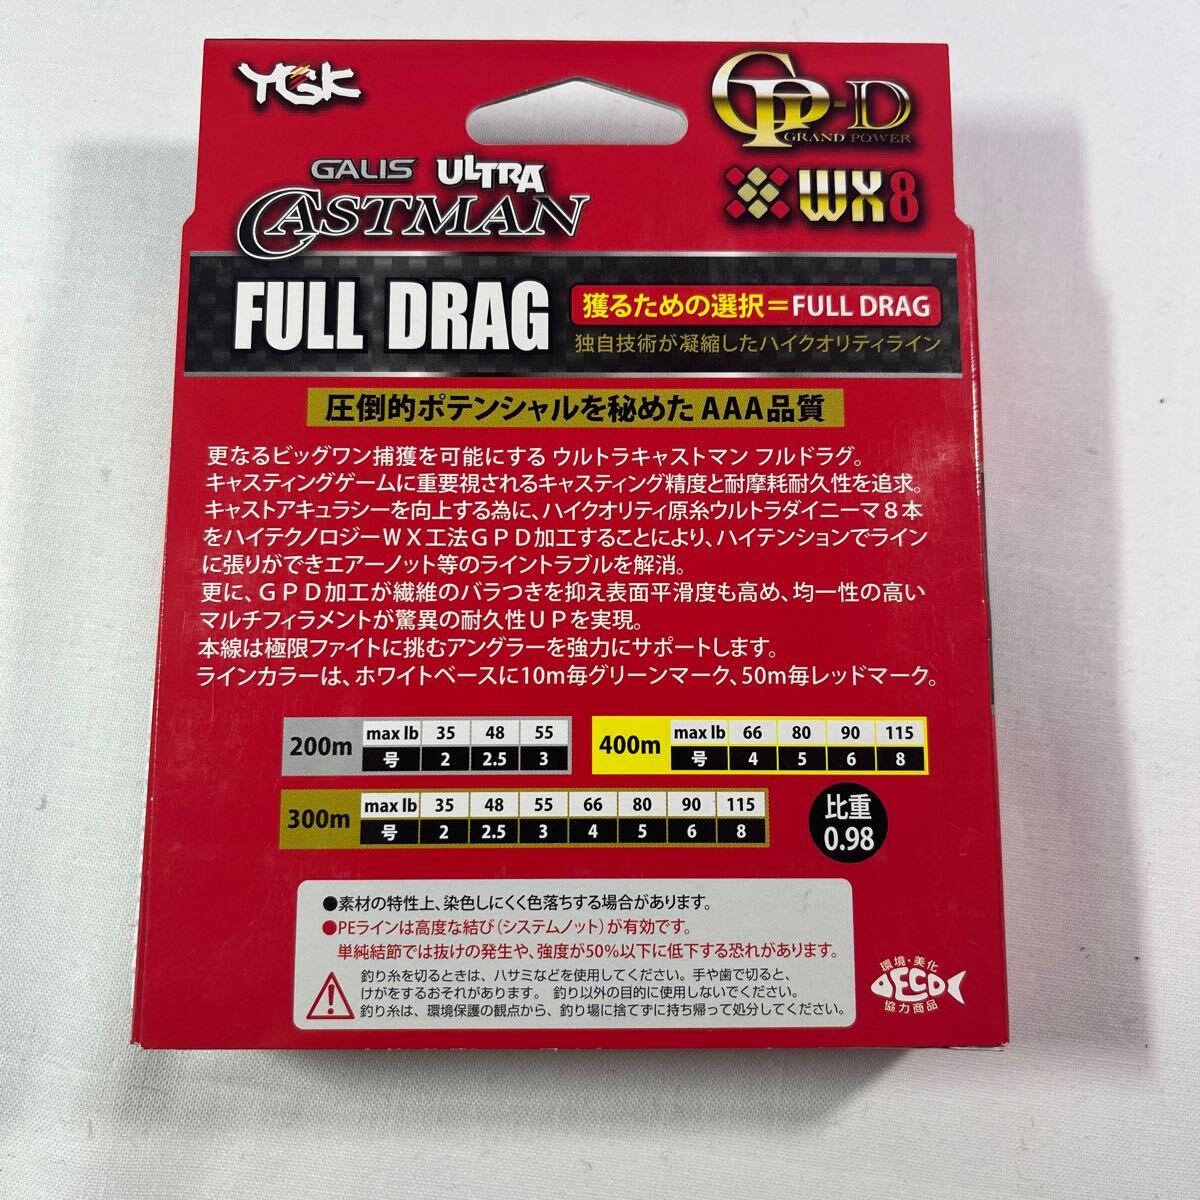 ガリス ウルトラキャストマン FULL DRAG WX8GP-D 2.5号 200m【新品未使用品】N9211_画像2